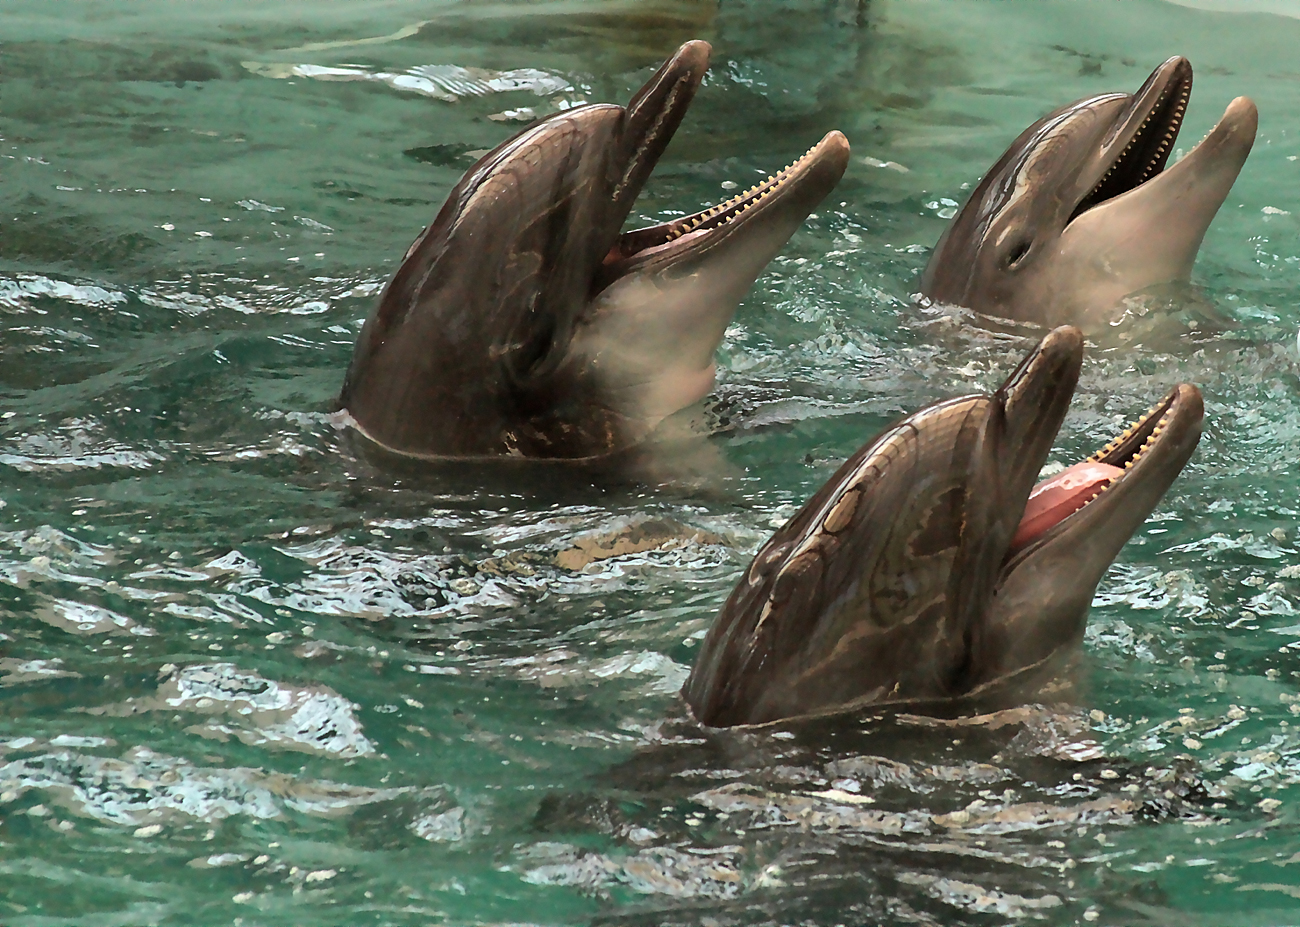 Golfinhos sabem conversar sem interromper uns aos outros, segundo estudo